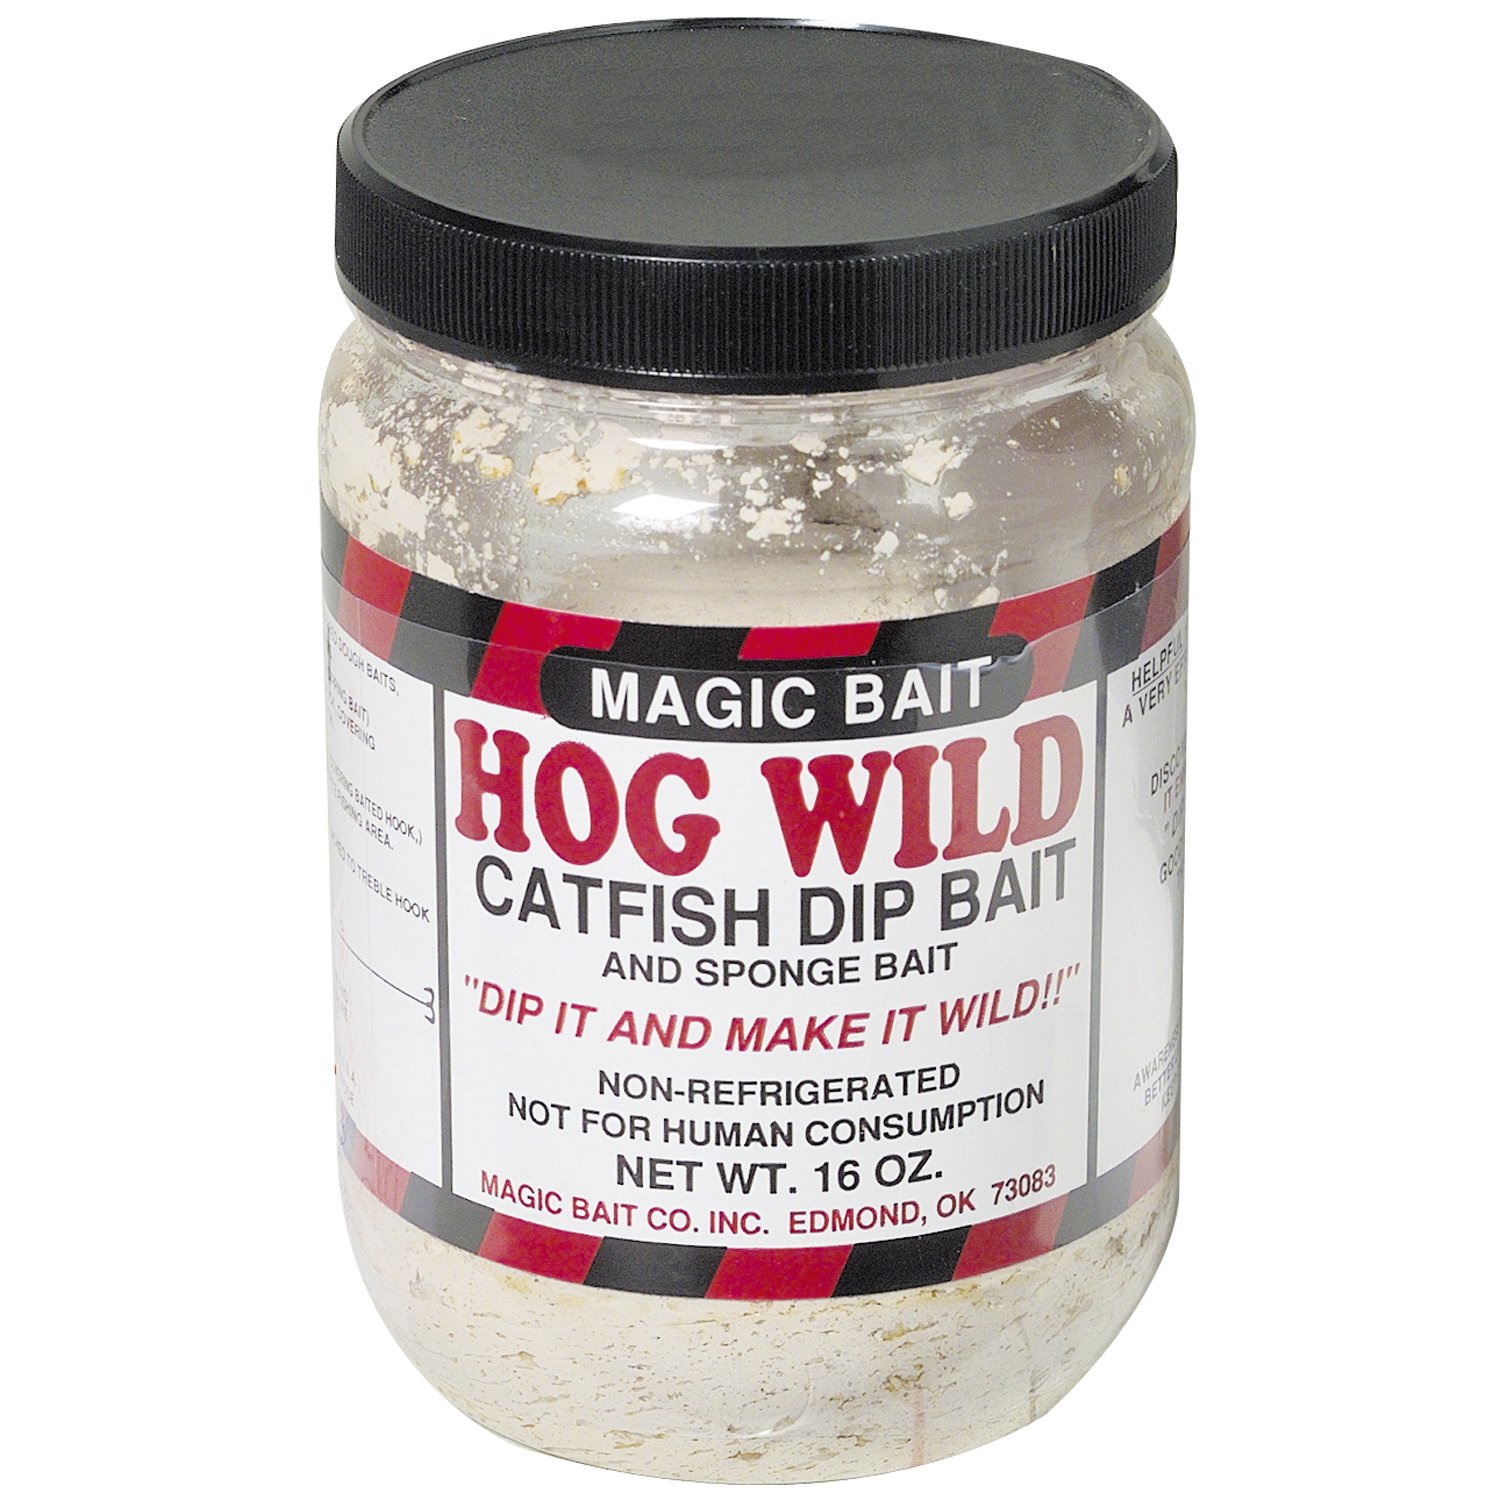 Magic Bait Hog Wild 10 oz. Catfish Dip Bait